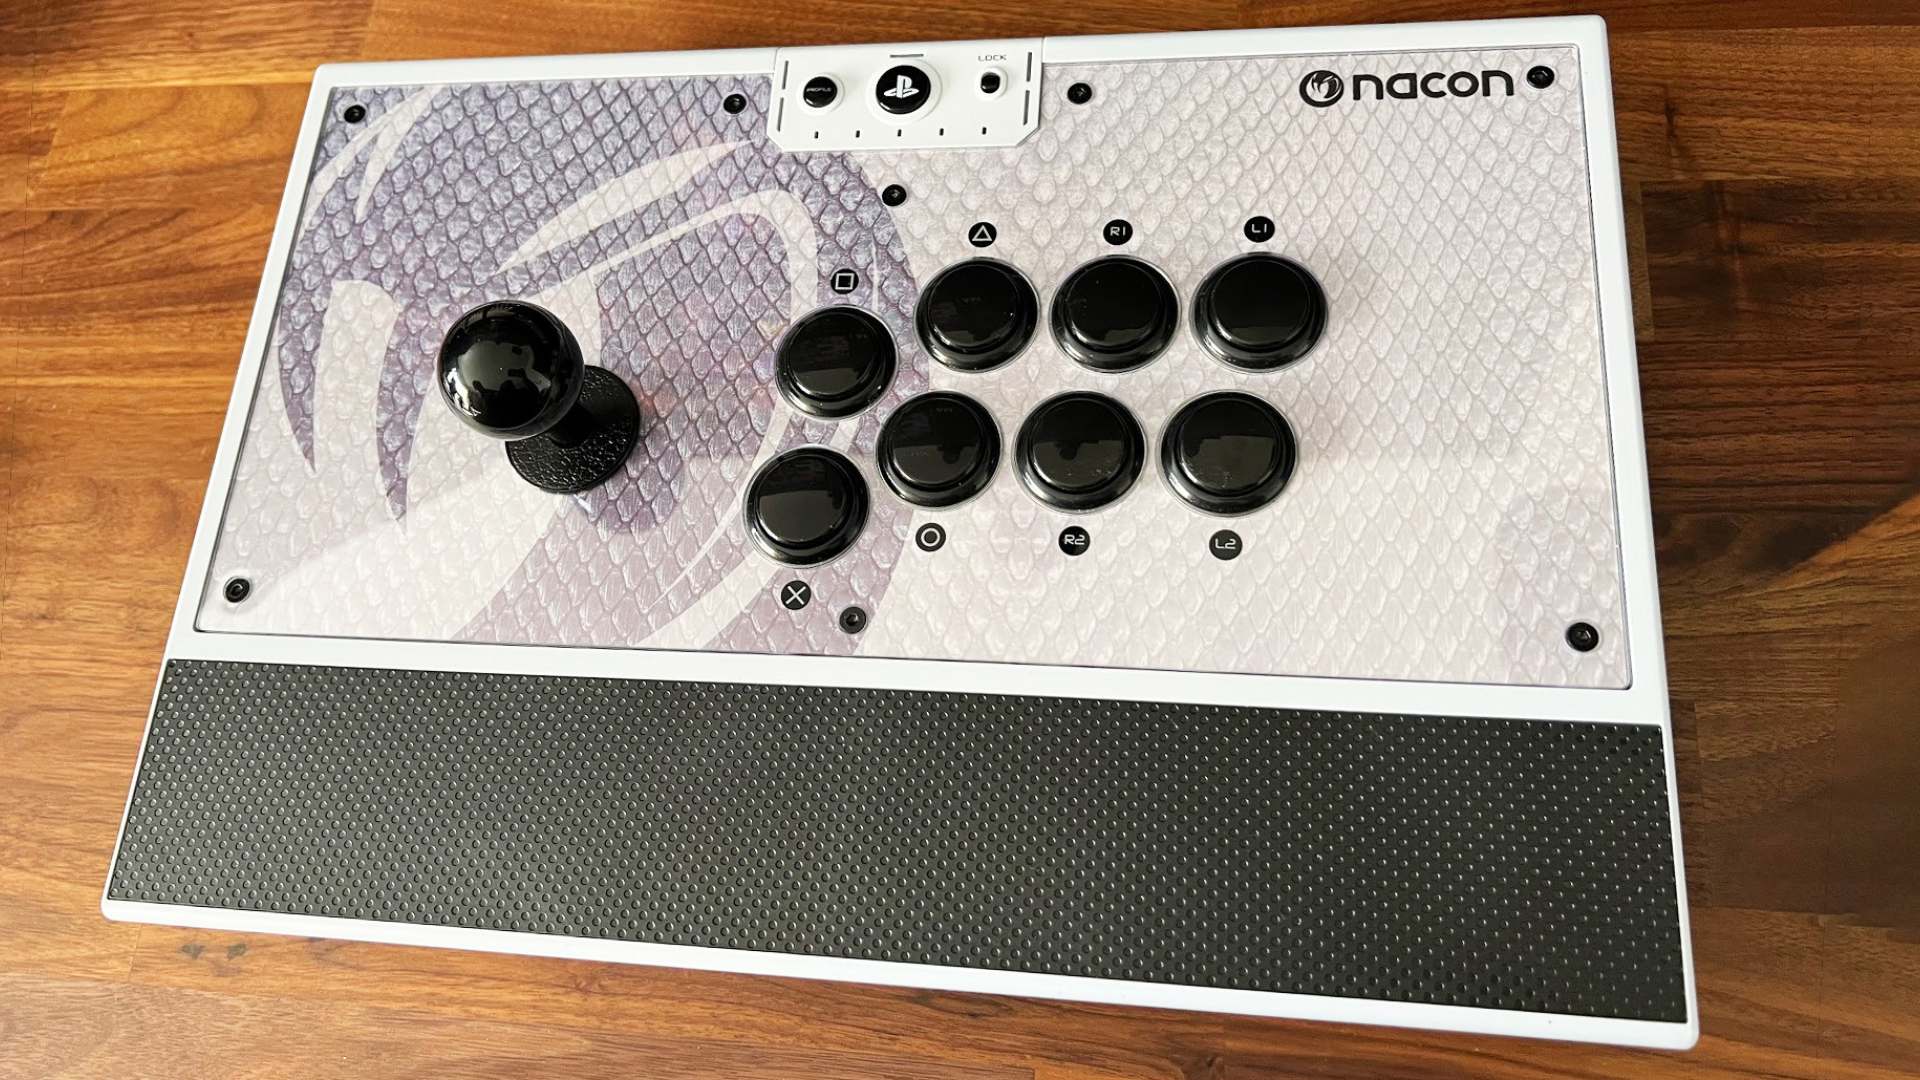 Mejor controlador de PC: Stick arcade Nacon Daija en la superficie de la madera